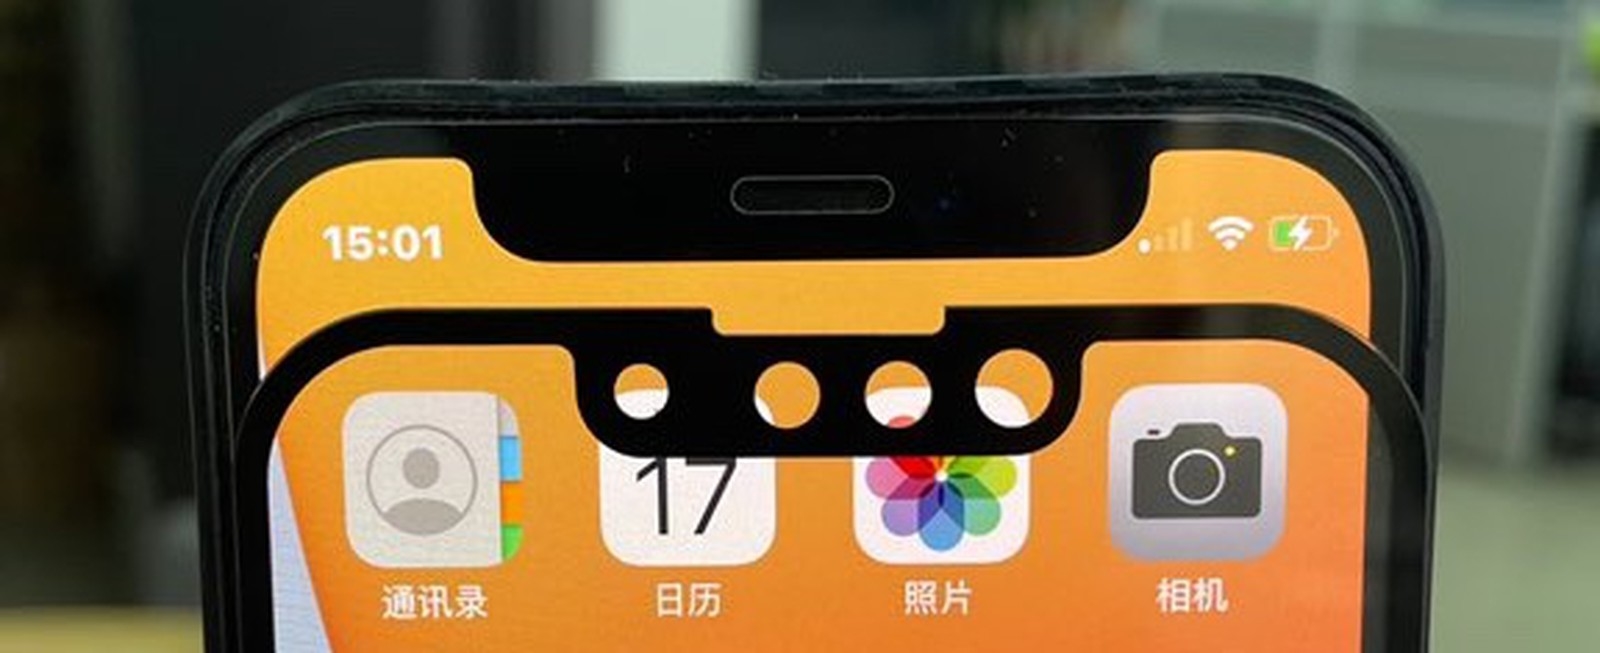 Iphone 13新图曝光 刘海缩小后新外形加持 Iphone13 Iphone 新浪科技 新浪网